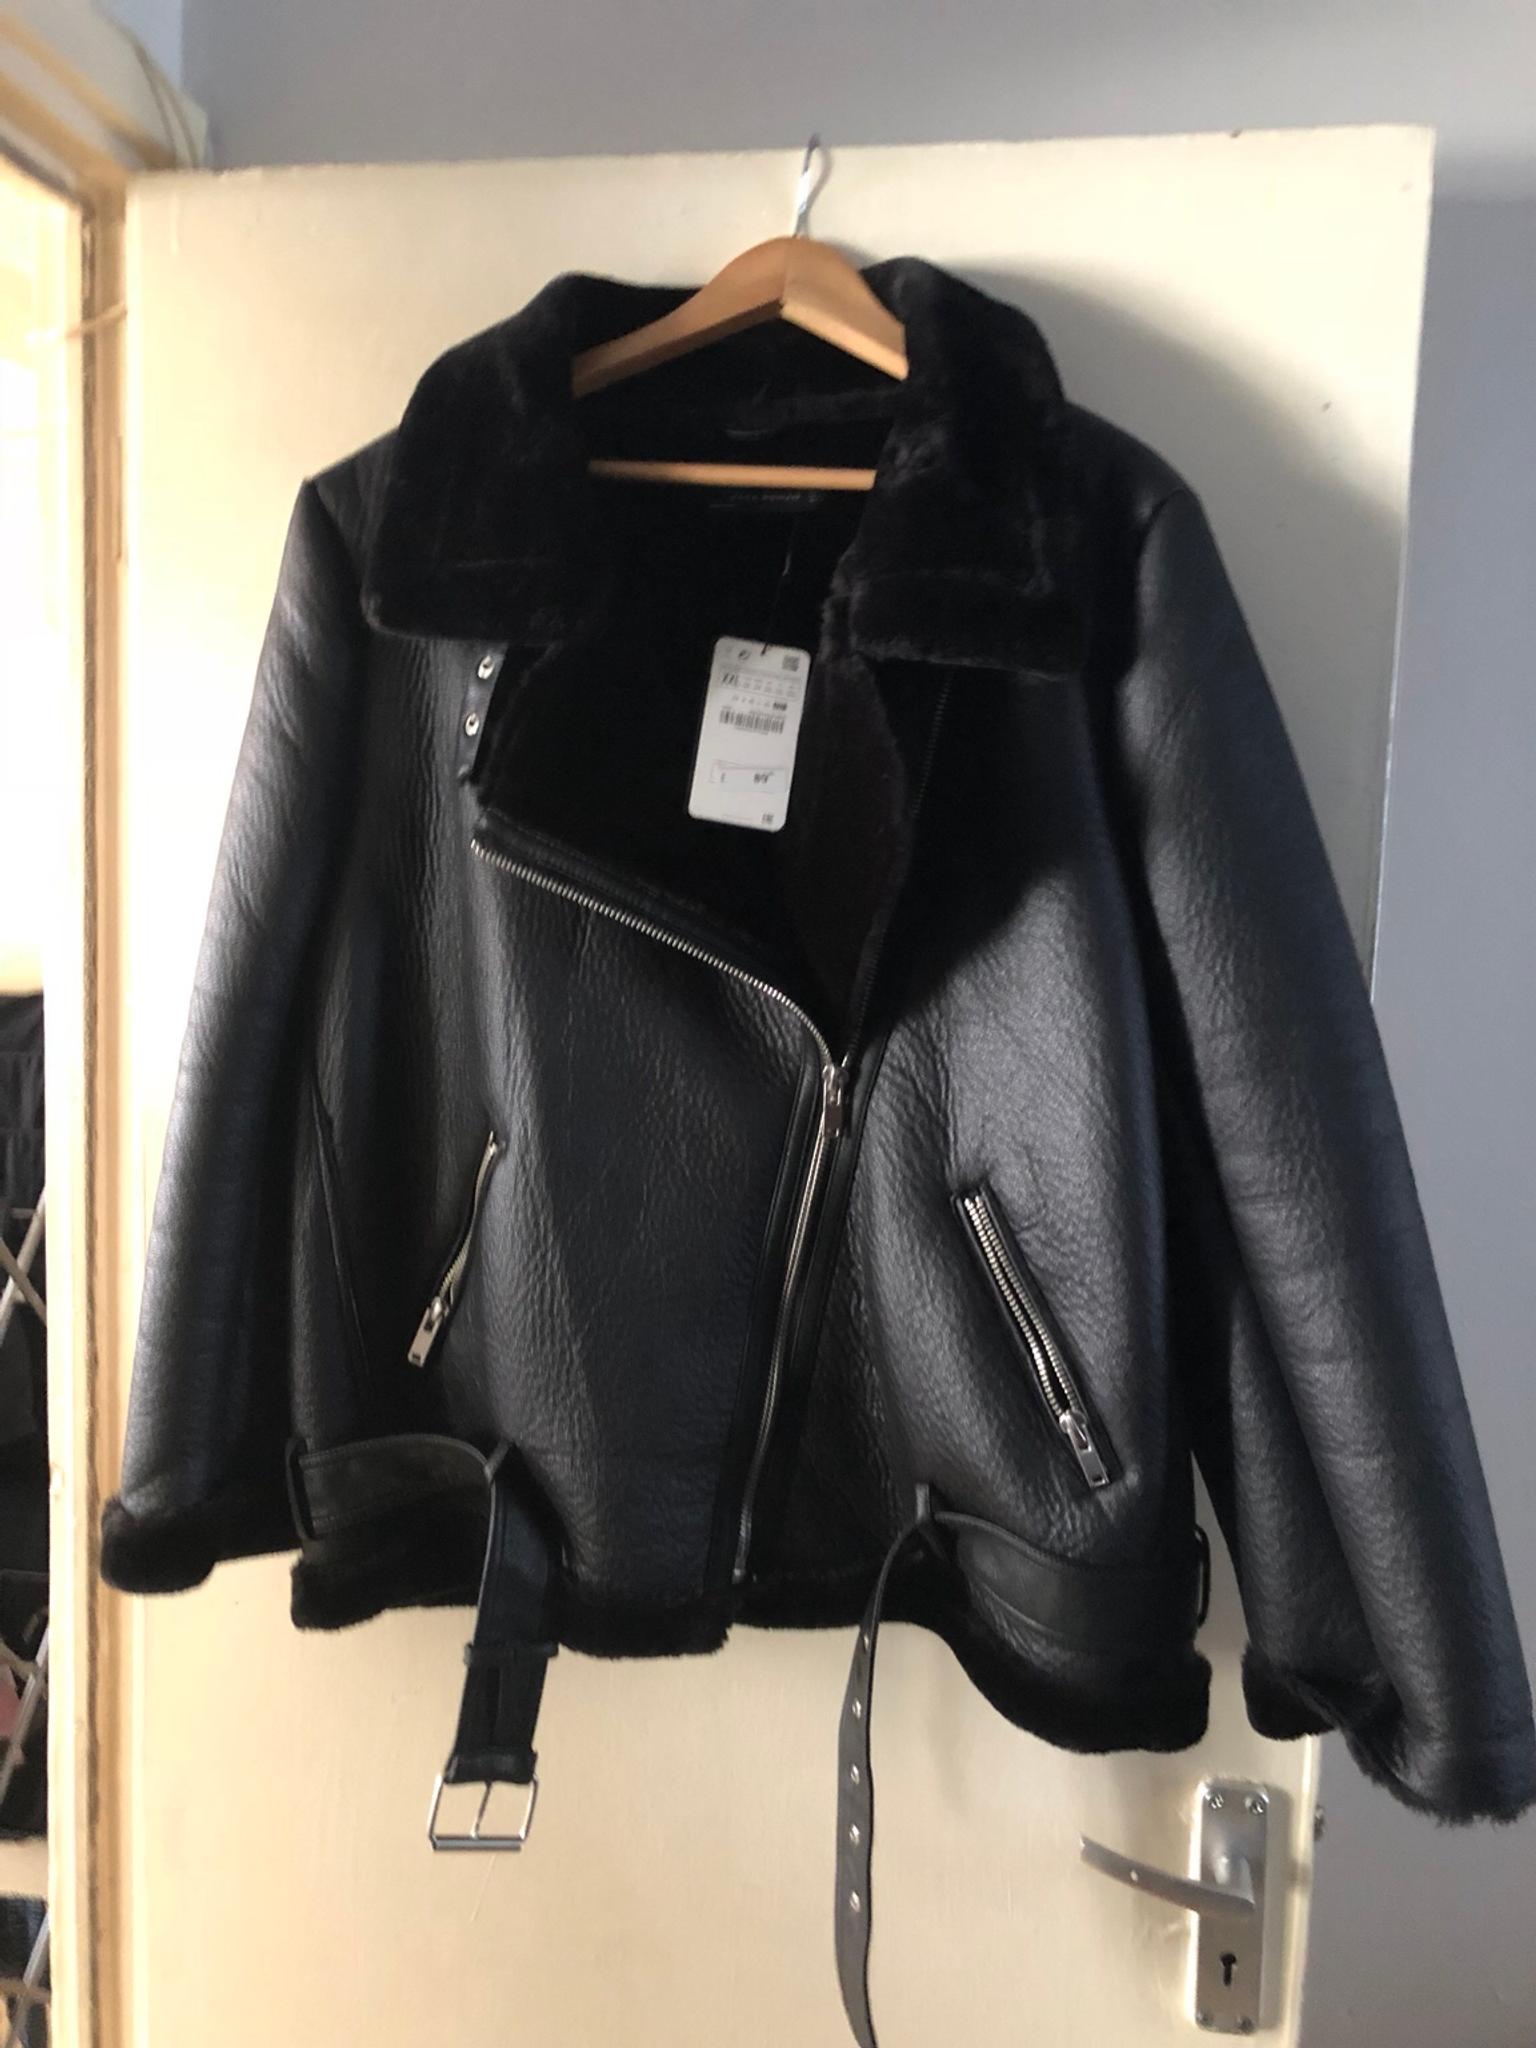 Zara Aviator/Biker black jacket in SE1 